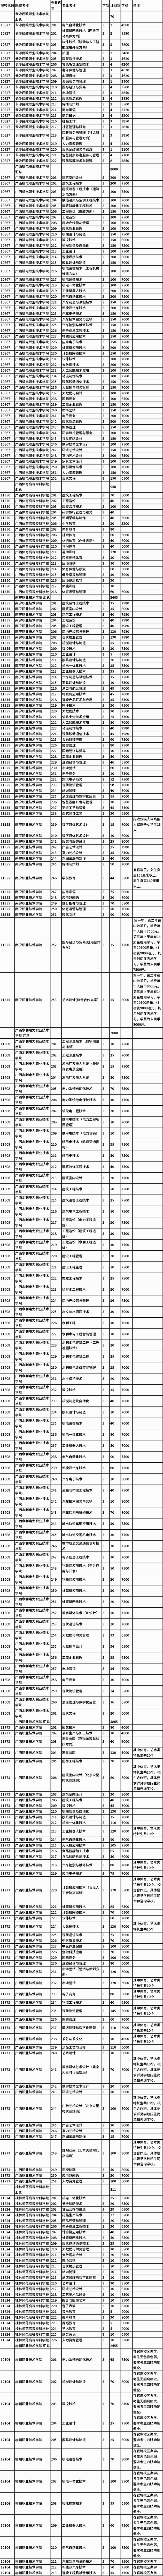 2021年广西高职院校单独考试招生计划